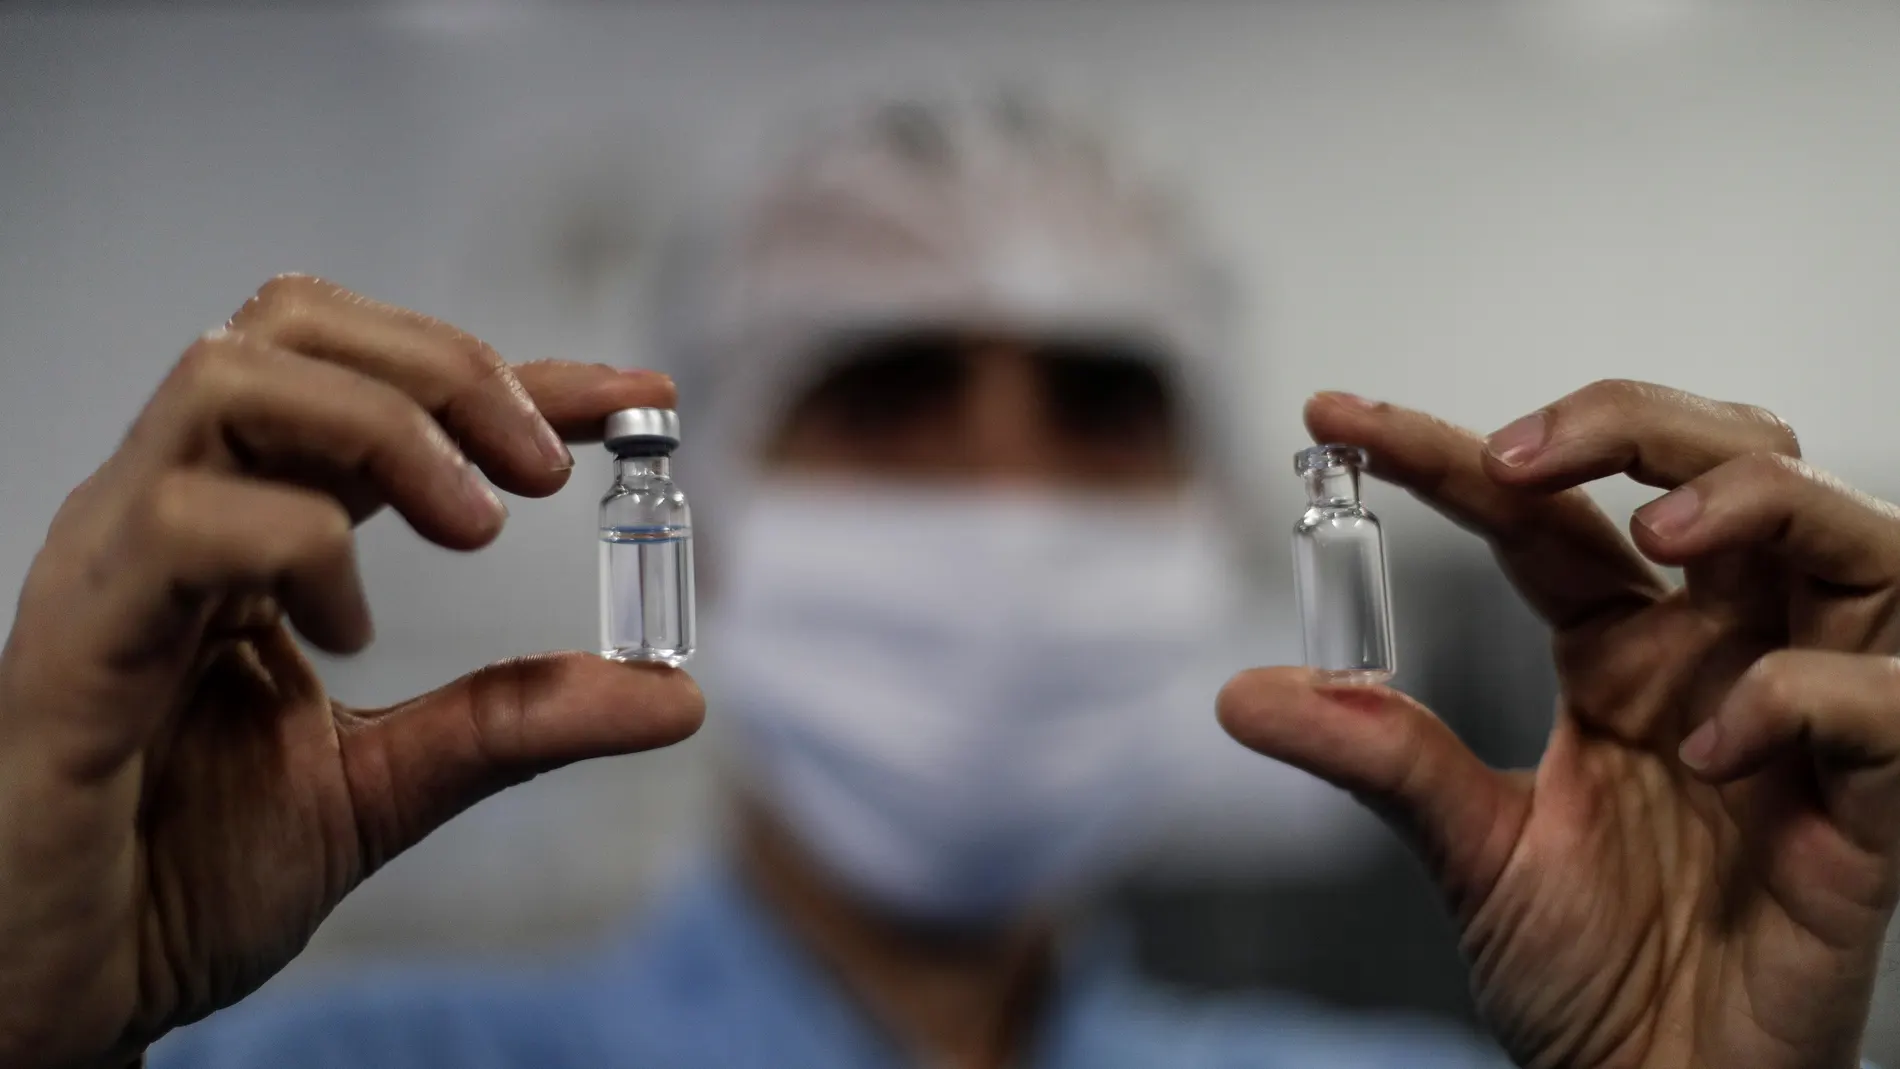 Brasil espera comenzar producción masiva de la vacuna de Oxford en diciembre